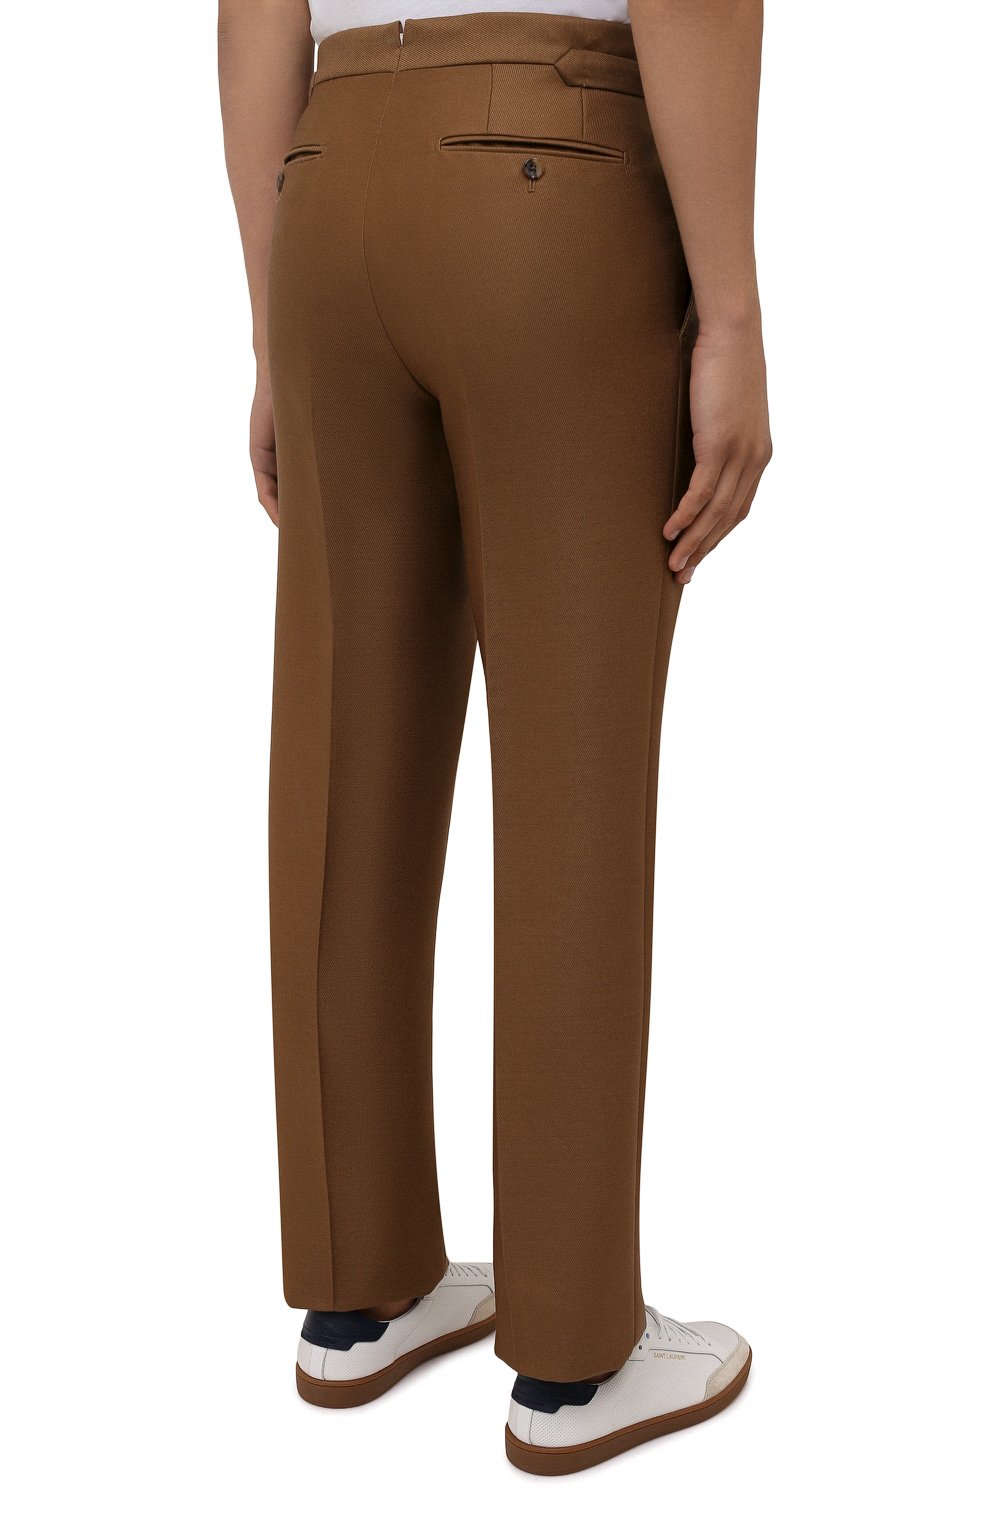 Мужские брюки из шерсти и вискозы TOM FORD коричневого цвета, арт. 244R24/610043 | Фото 4 (Материал внешний: Шерсть, Вискоза; Длина (брюки, джинсы): Стандартные; Случай: Повседневный; Стили: Кэжуэл)